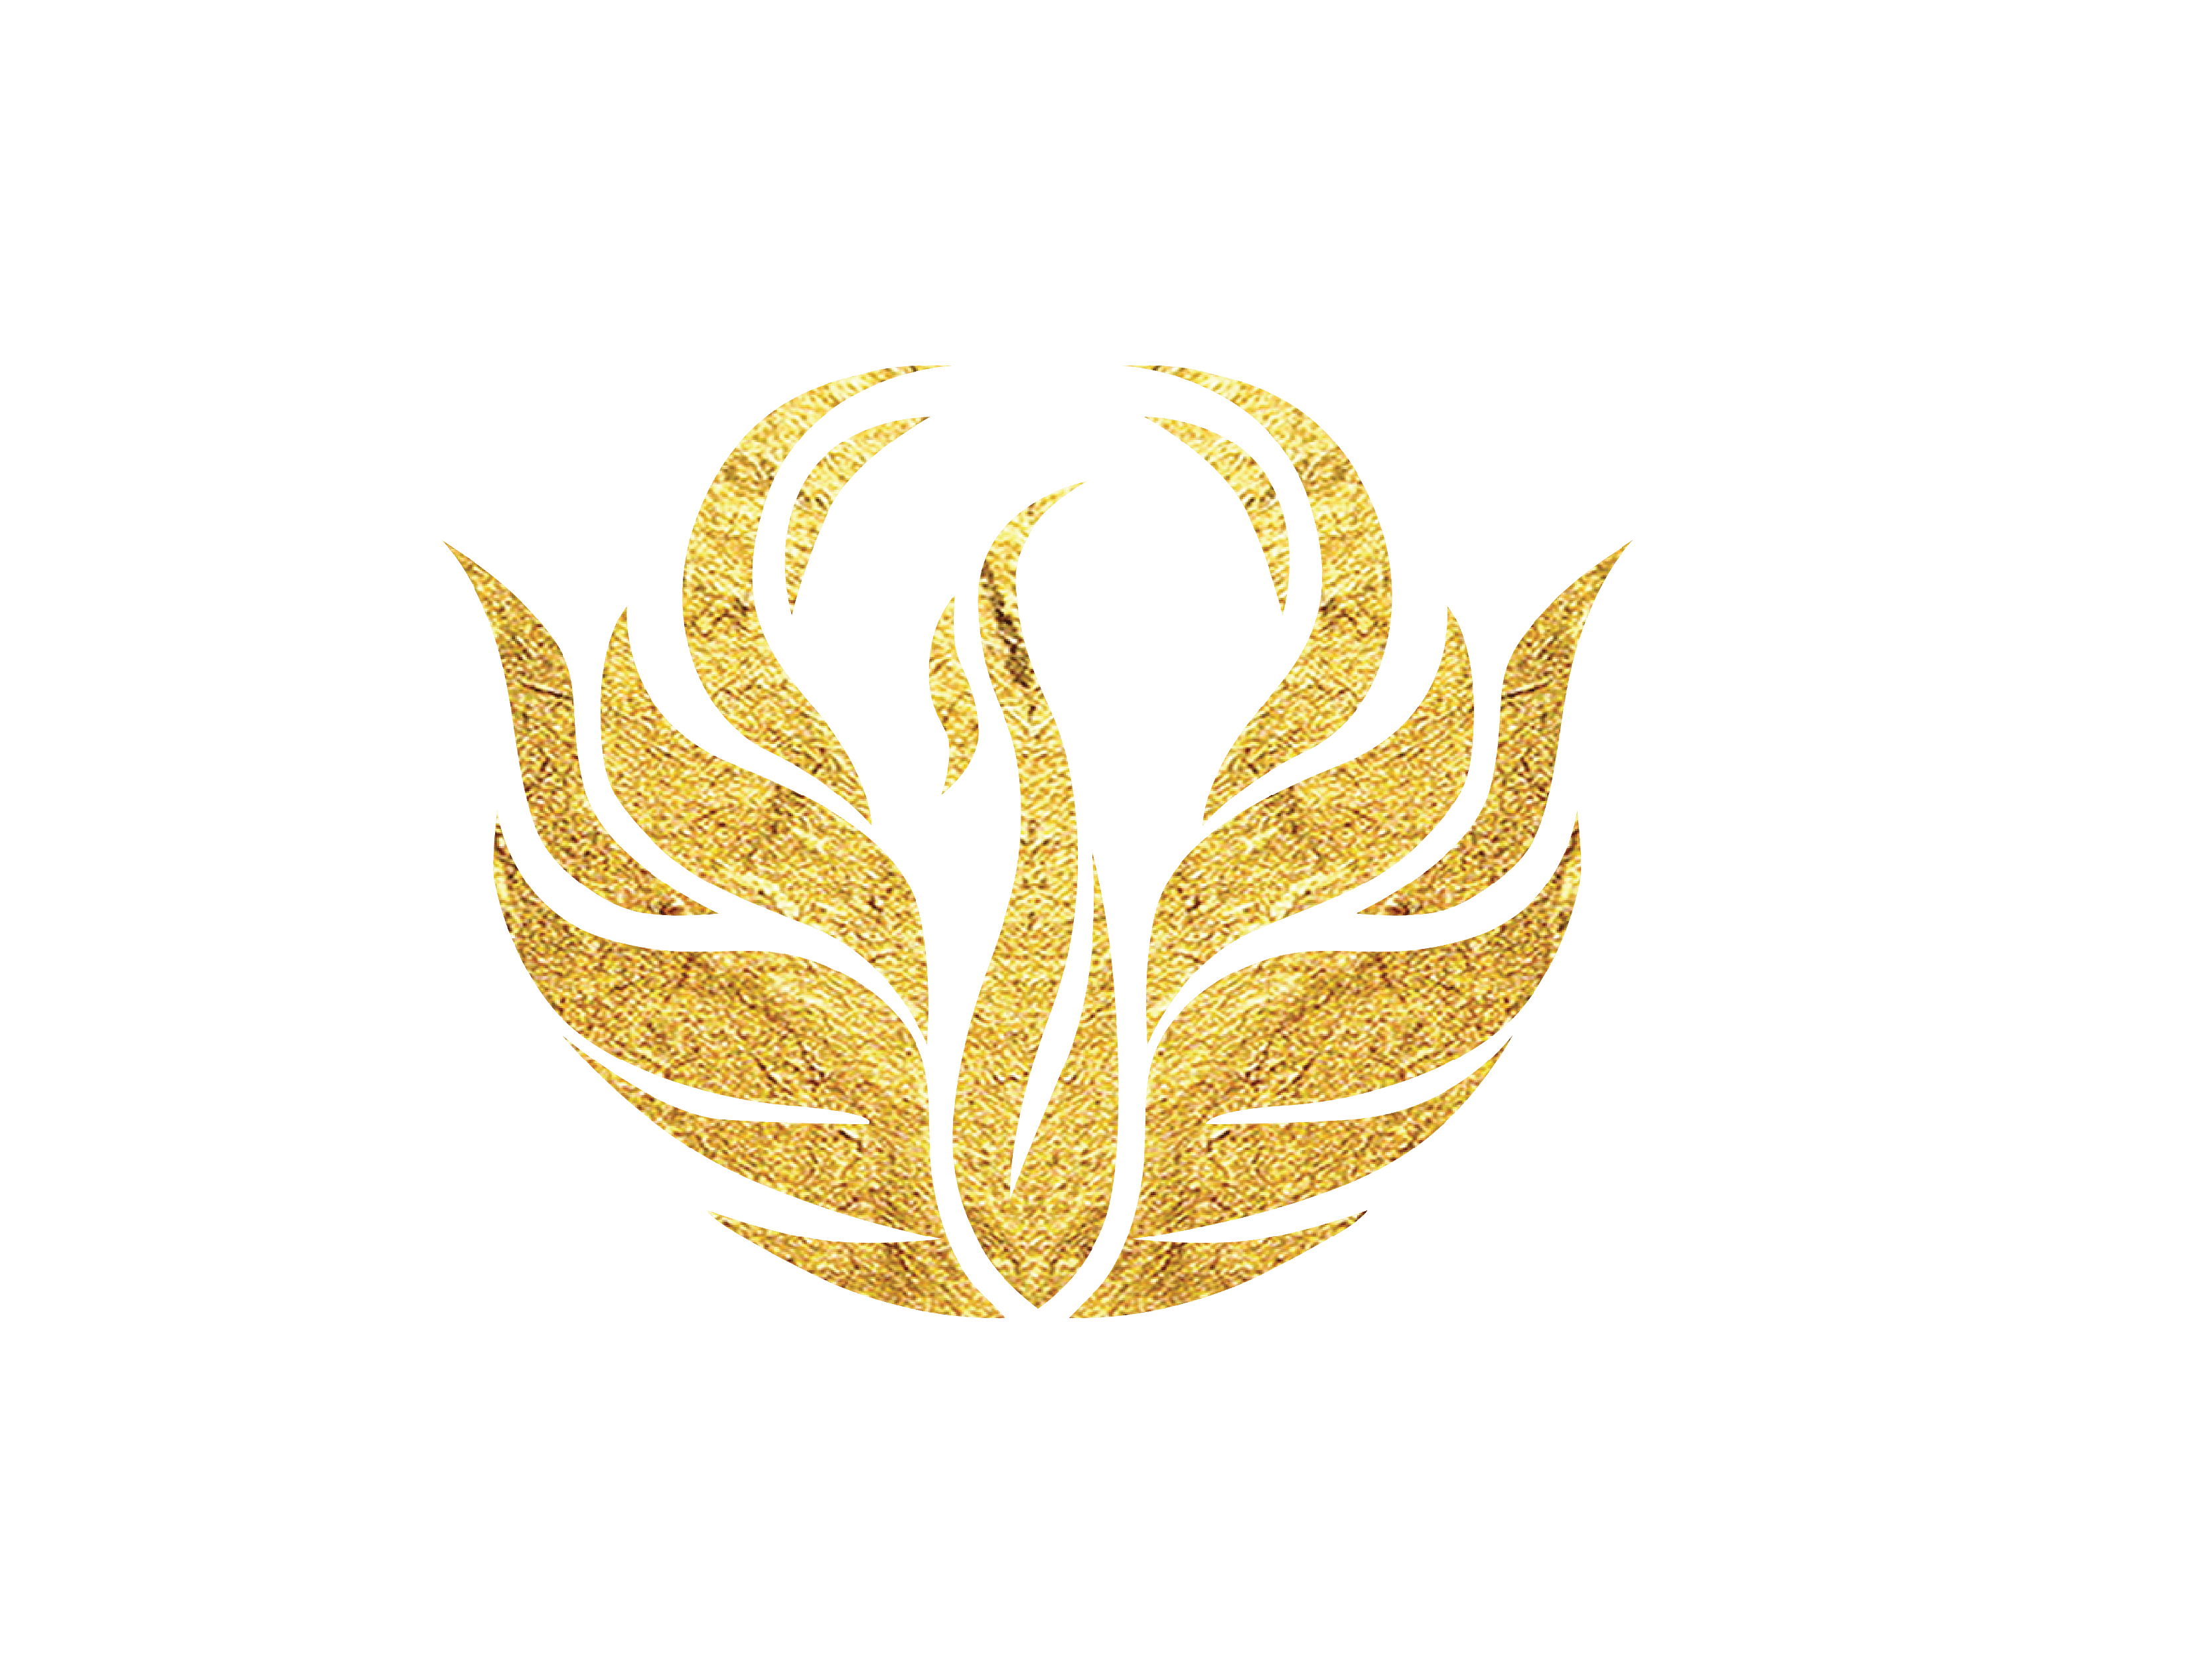 Gold Phoenix Logo Logodix